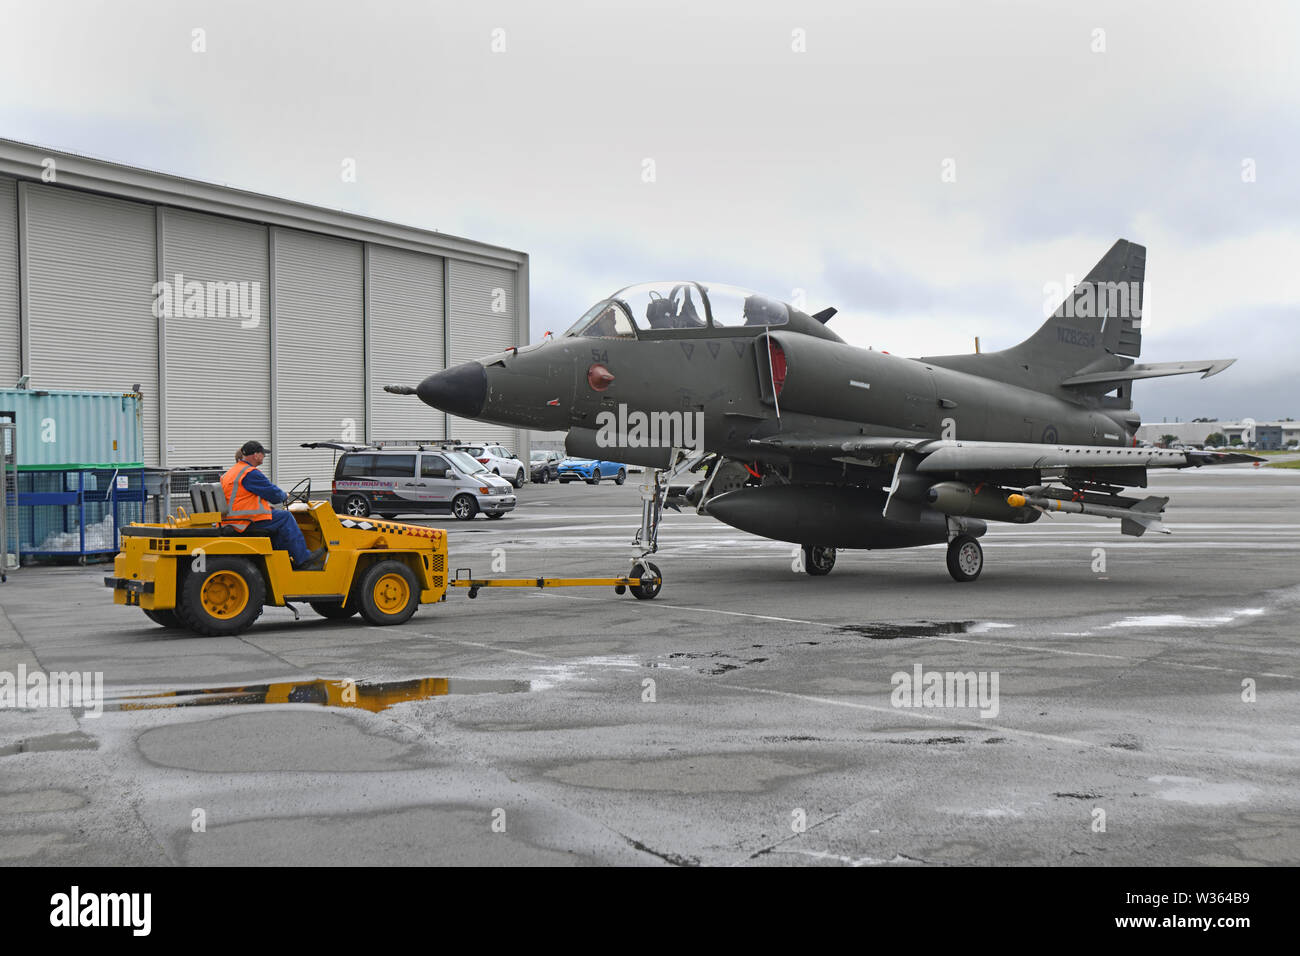 Un changement d'équipe d'entretien Skyhawk historique de chasse à l'Air Force Museum à Christchurch, Nouvelle-Zélande Banque D'Images